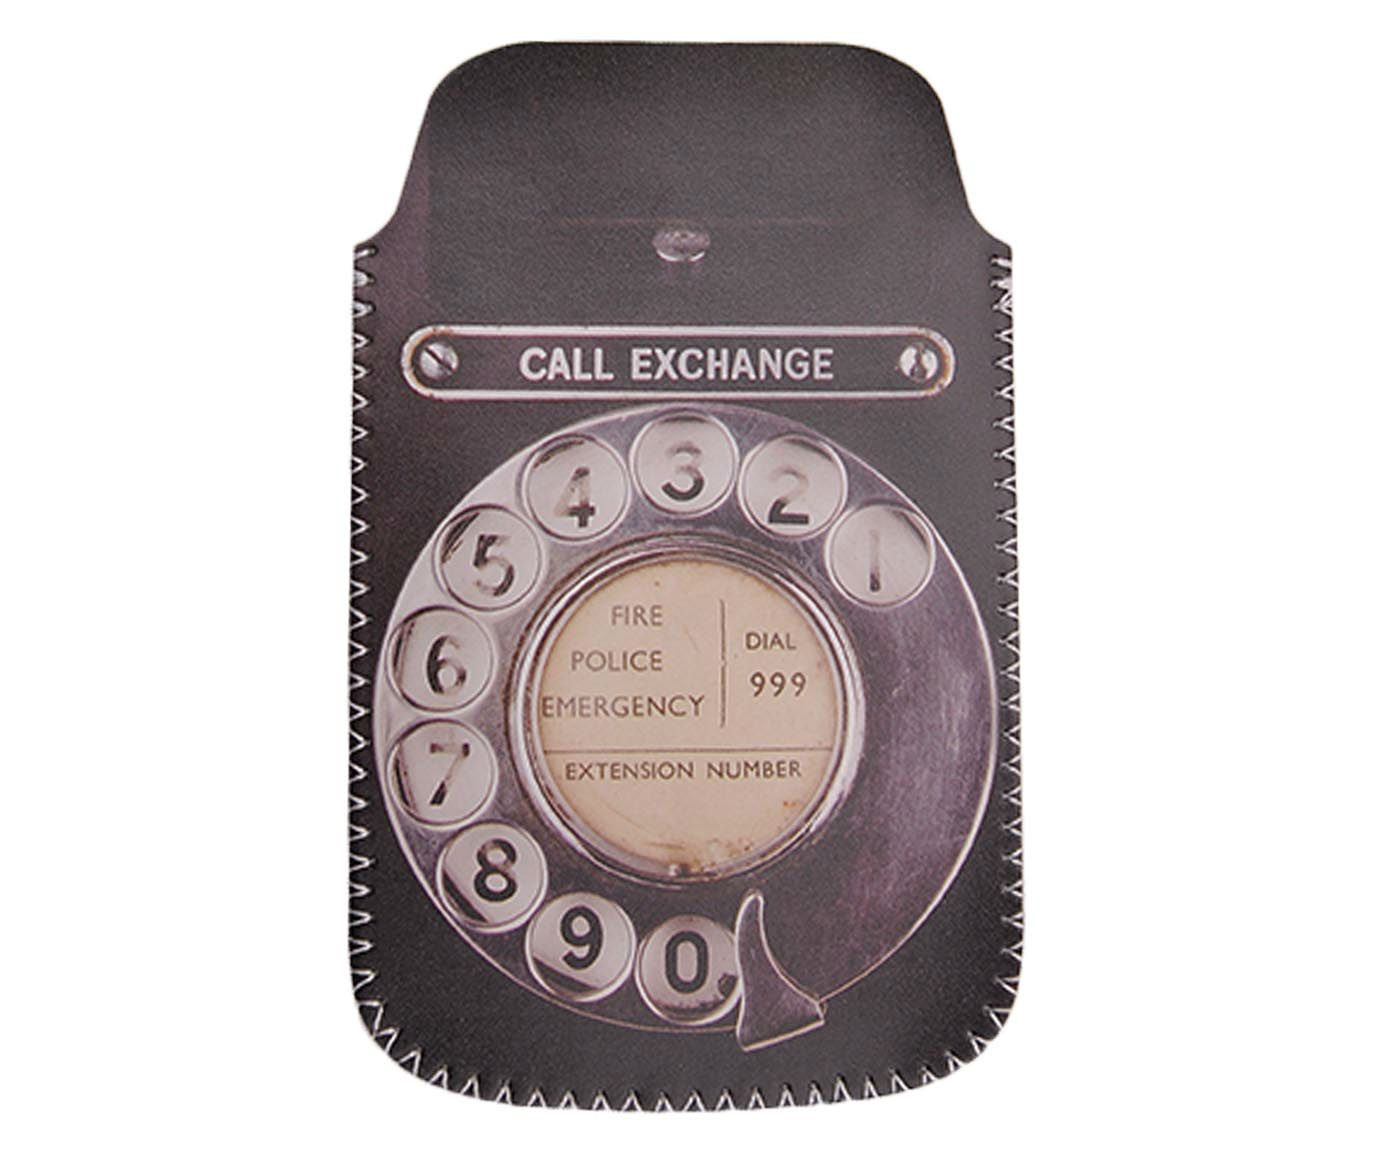 Capa para celular call exchange | Westwing.com.br